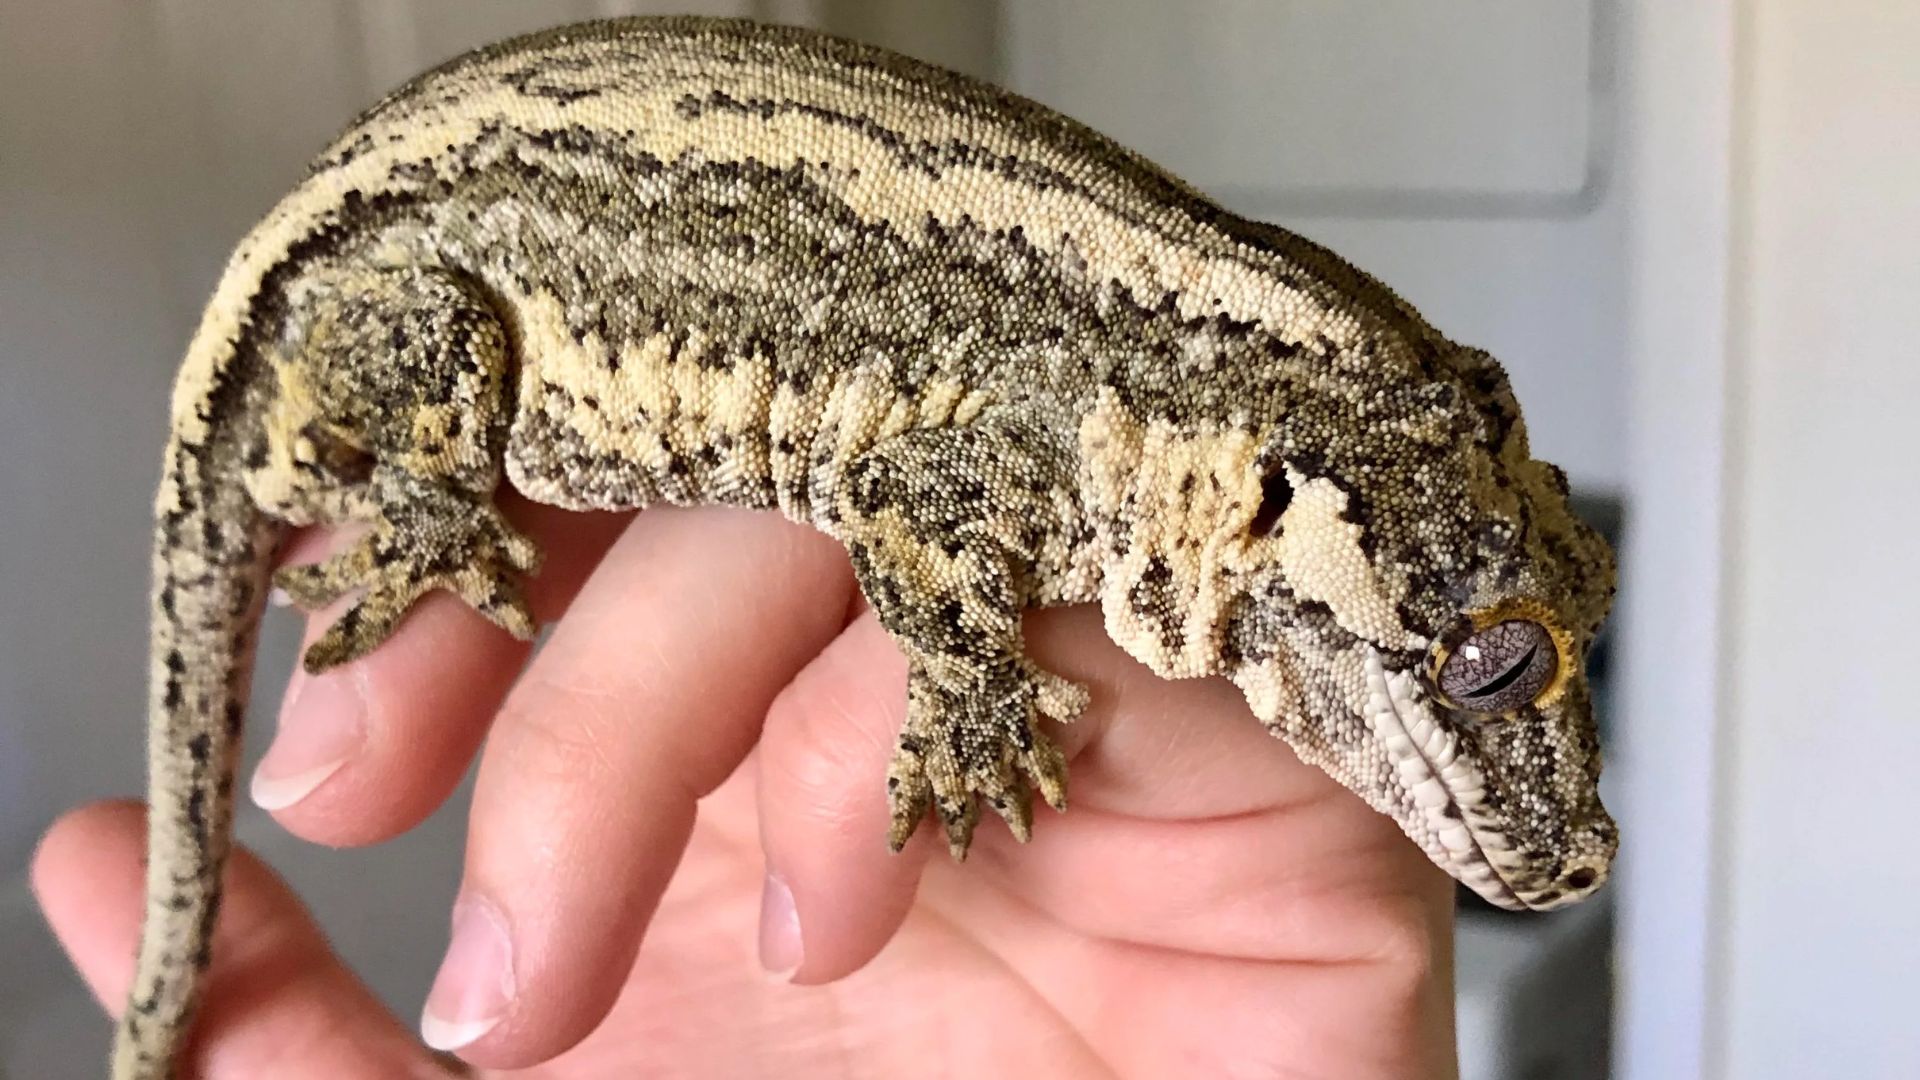 How Big Do Gargoyle Geckos Get